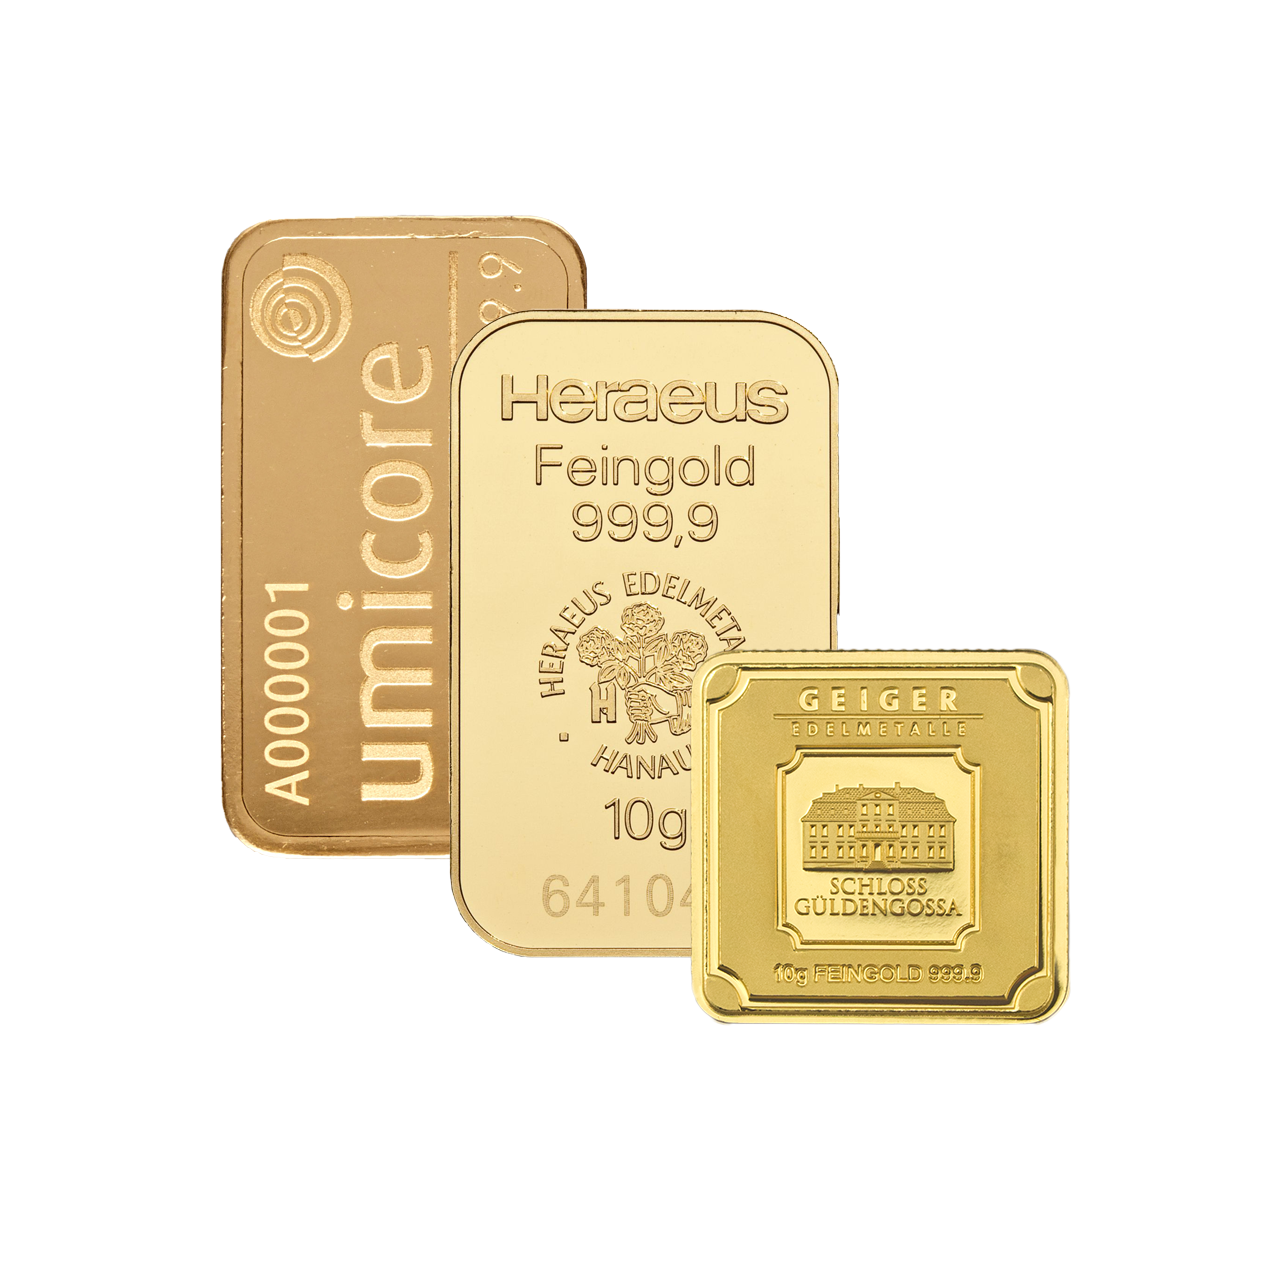 gold bar - 10 g fine gold .9999 - various brands